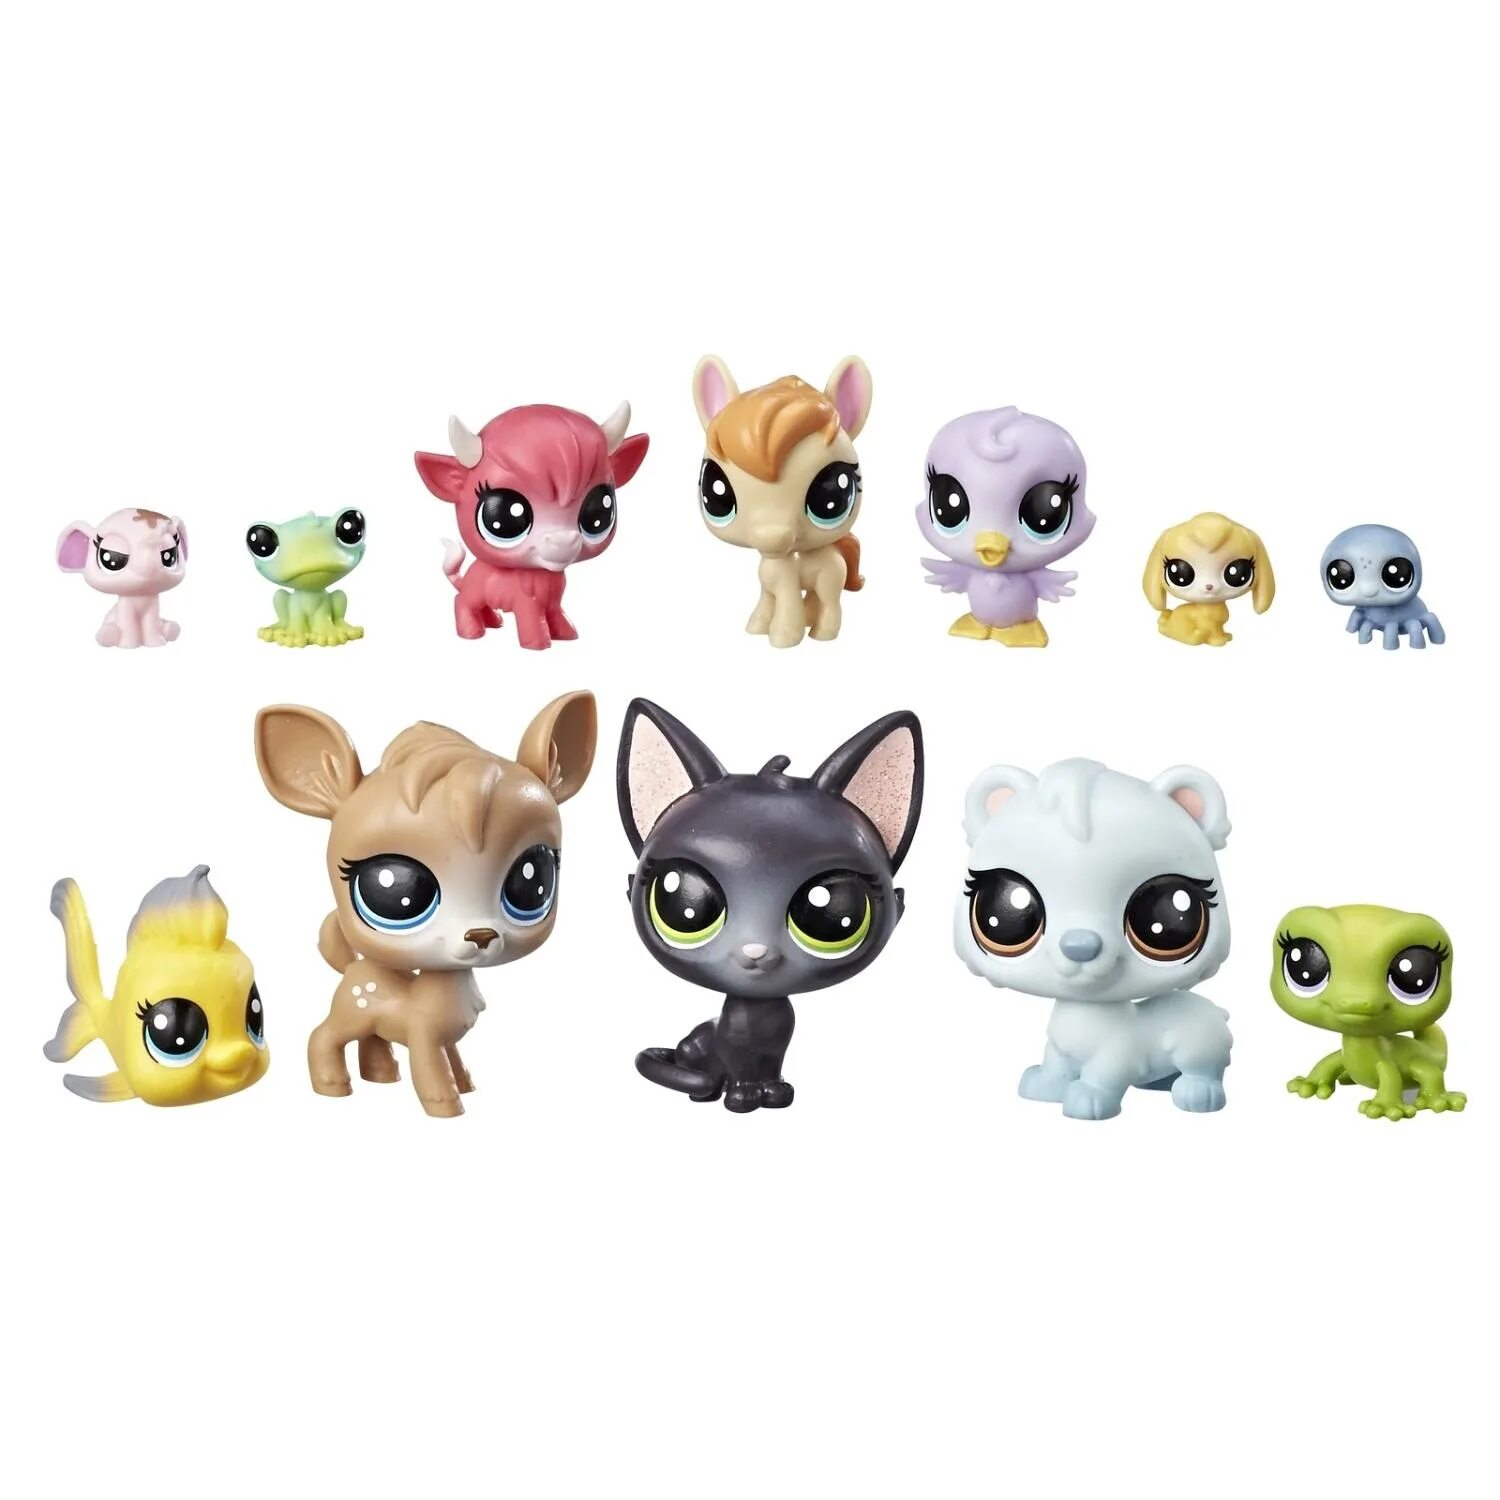 Игровой набор Hasbro Littlest Pet shop e3034. Littlest Pet shop 3011. Хасбро Littlest Pet shop. Литлест пет шоп новая коллекция. Где купить пэты